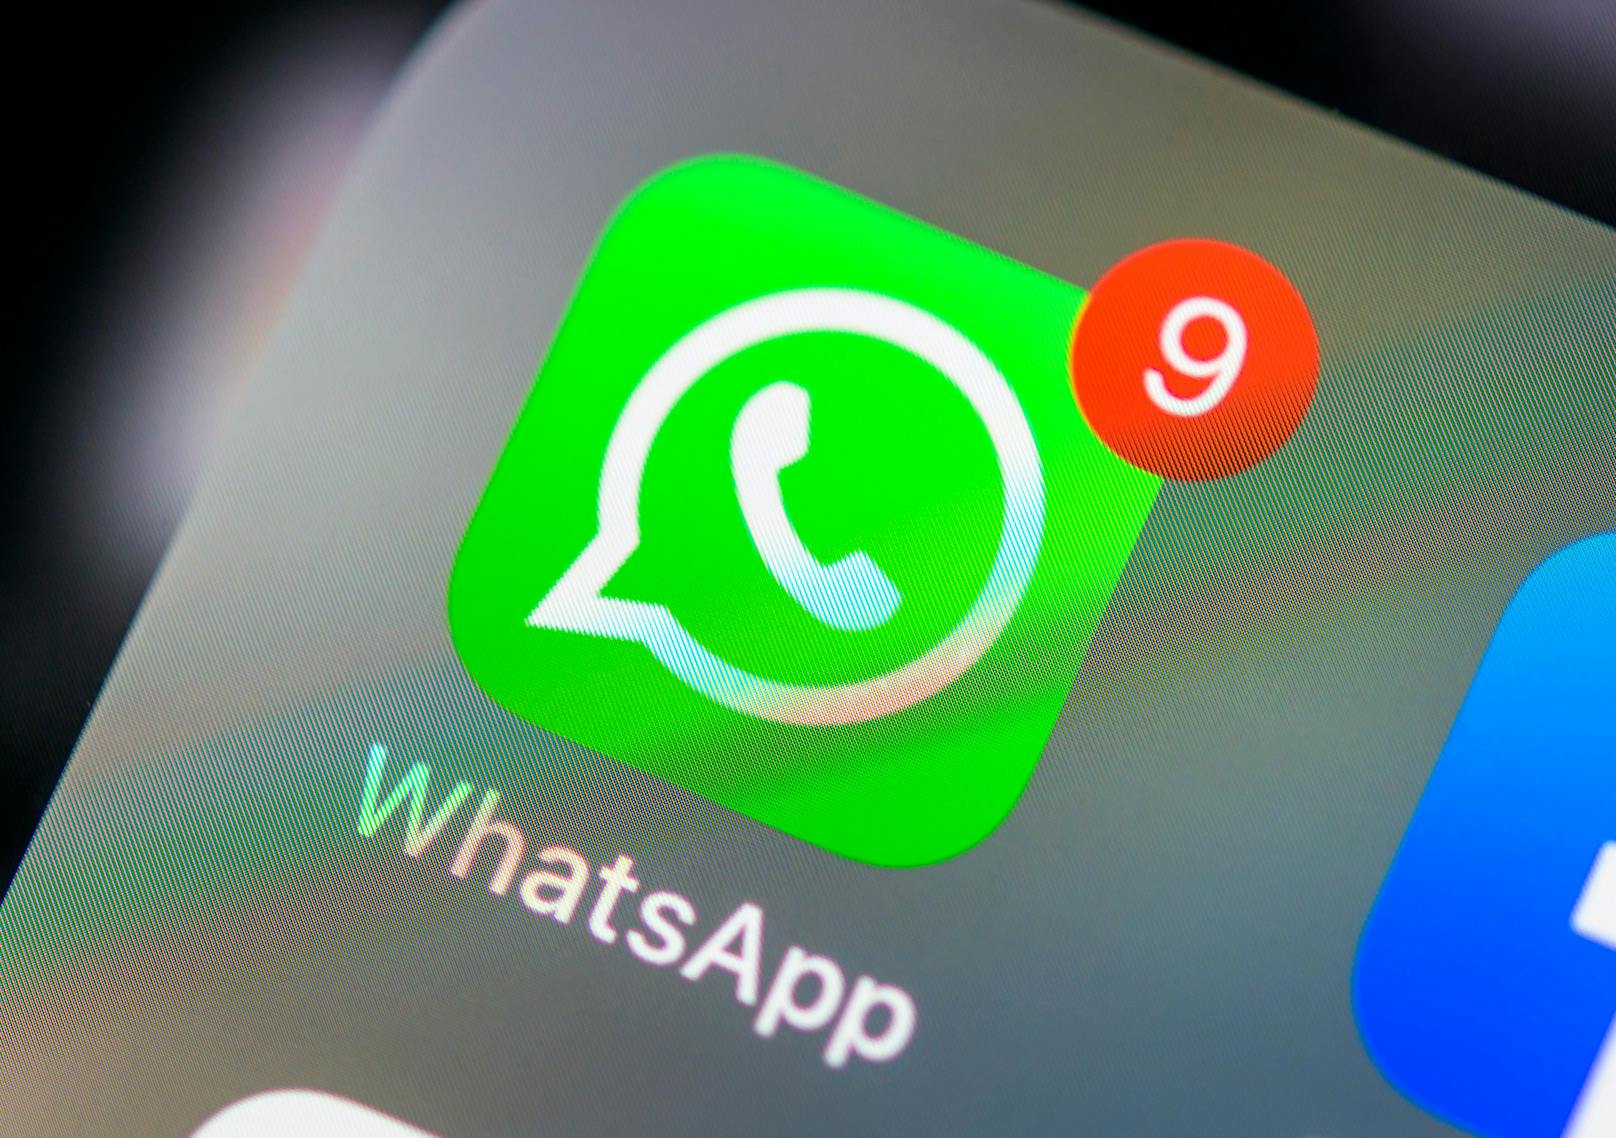 Die neuen Nutzungsbedingungen von WhatsApp waren Gegenstand der Klage. (Symbolbild)